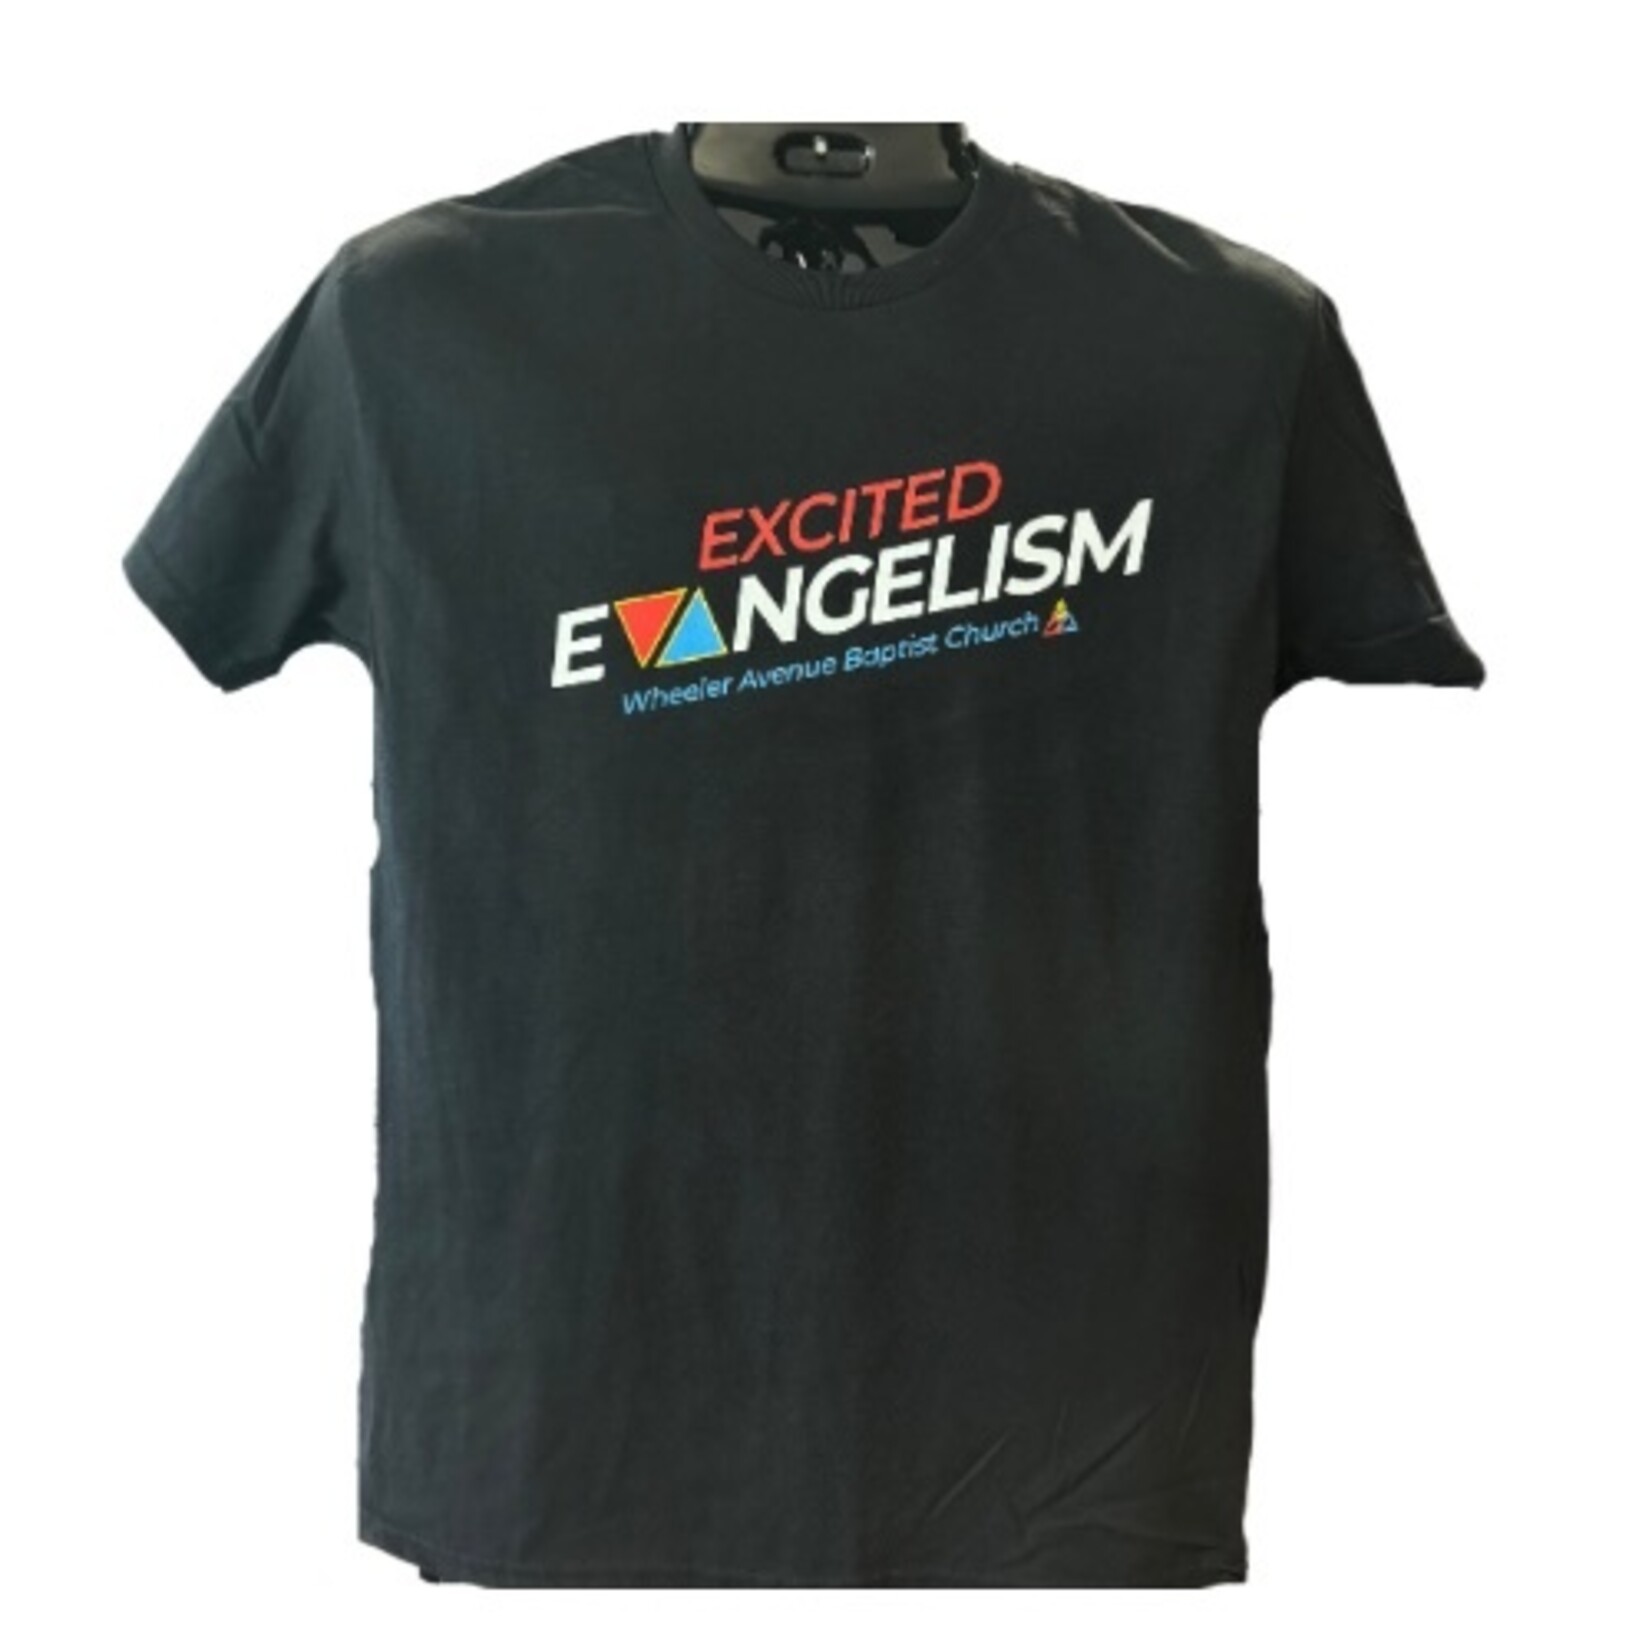 EXCITED EVANGELISM